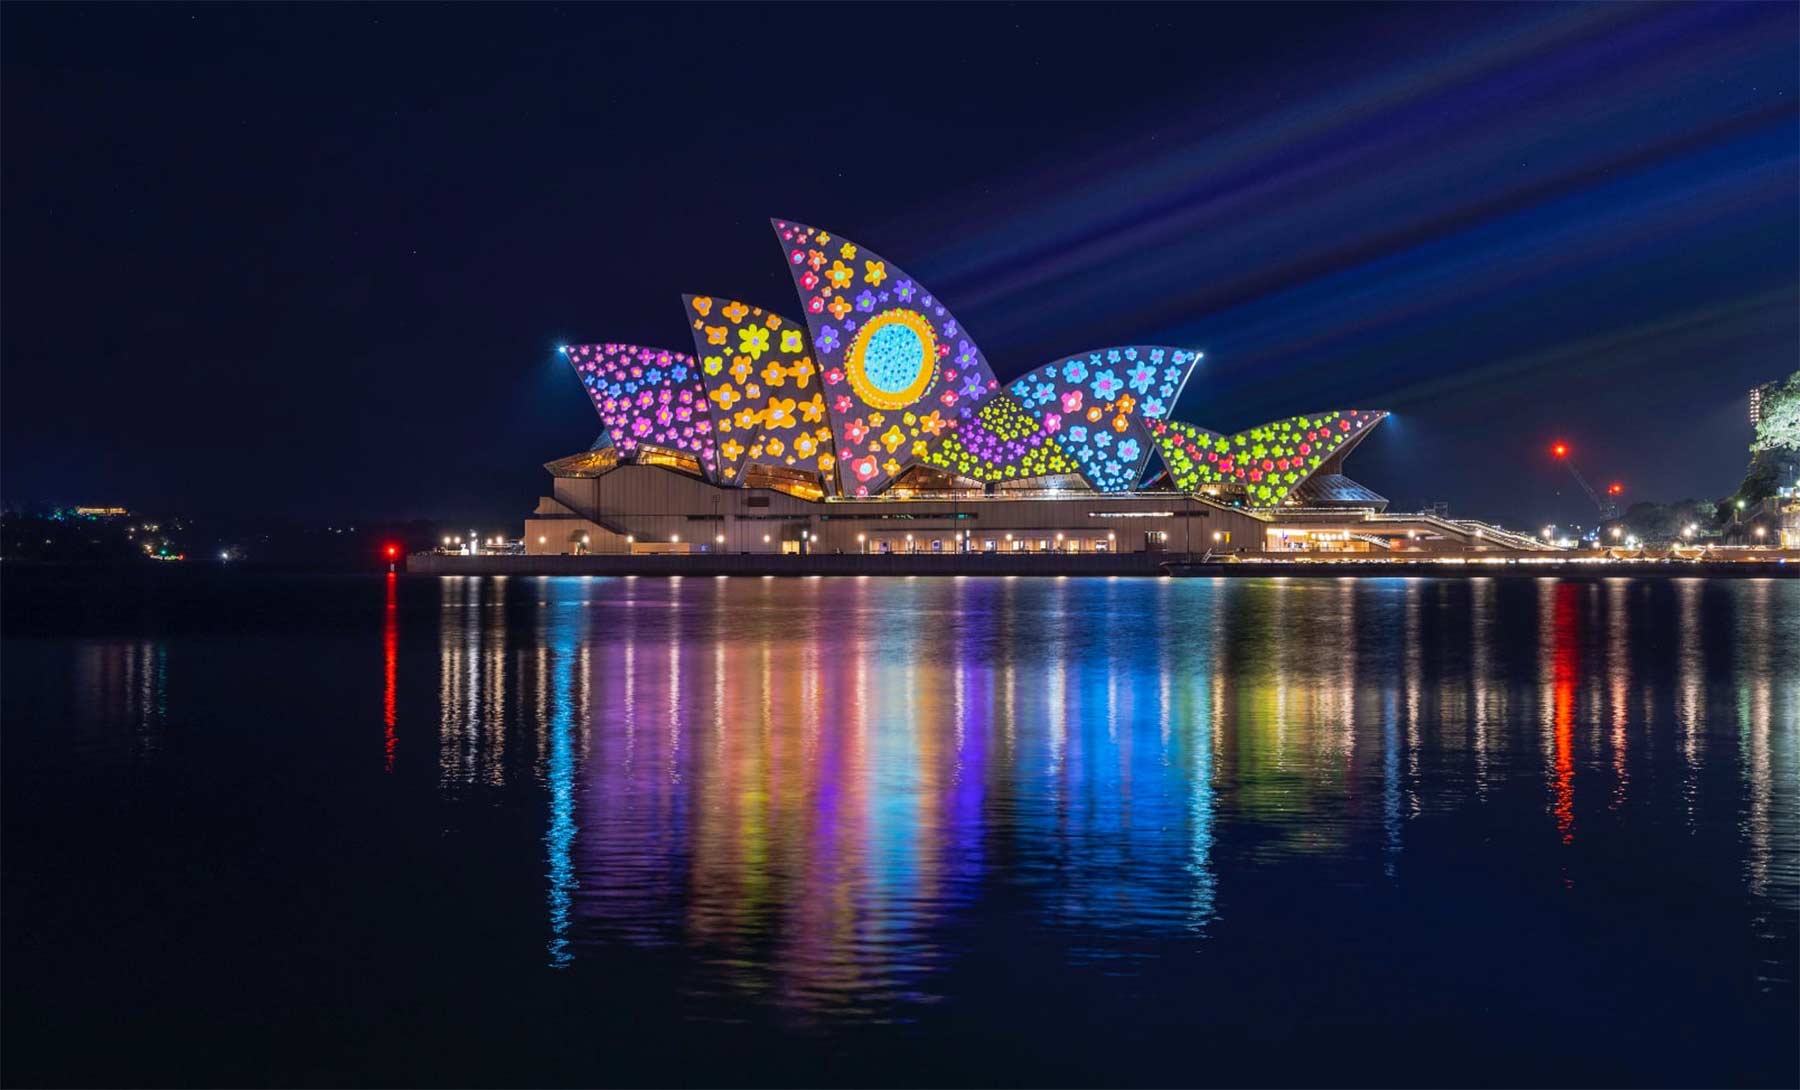 Lichtkunst trifft Architektur beim "Vivid Sydney 2022" Vivid-Sydney-lichtinstallationen-fest-2022 